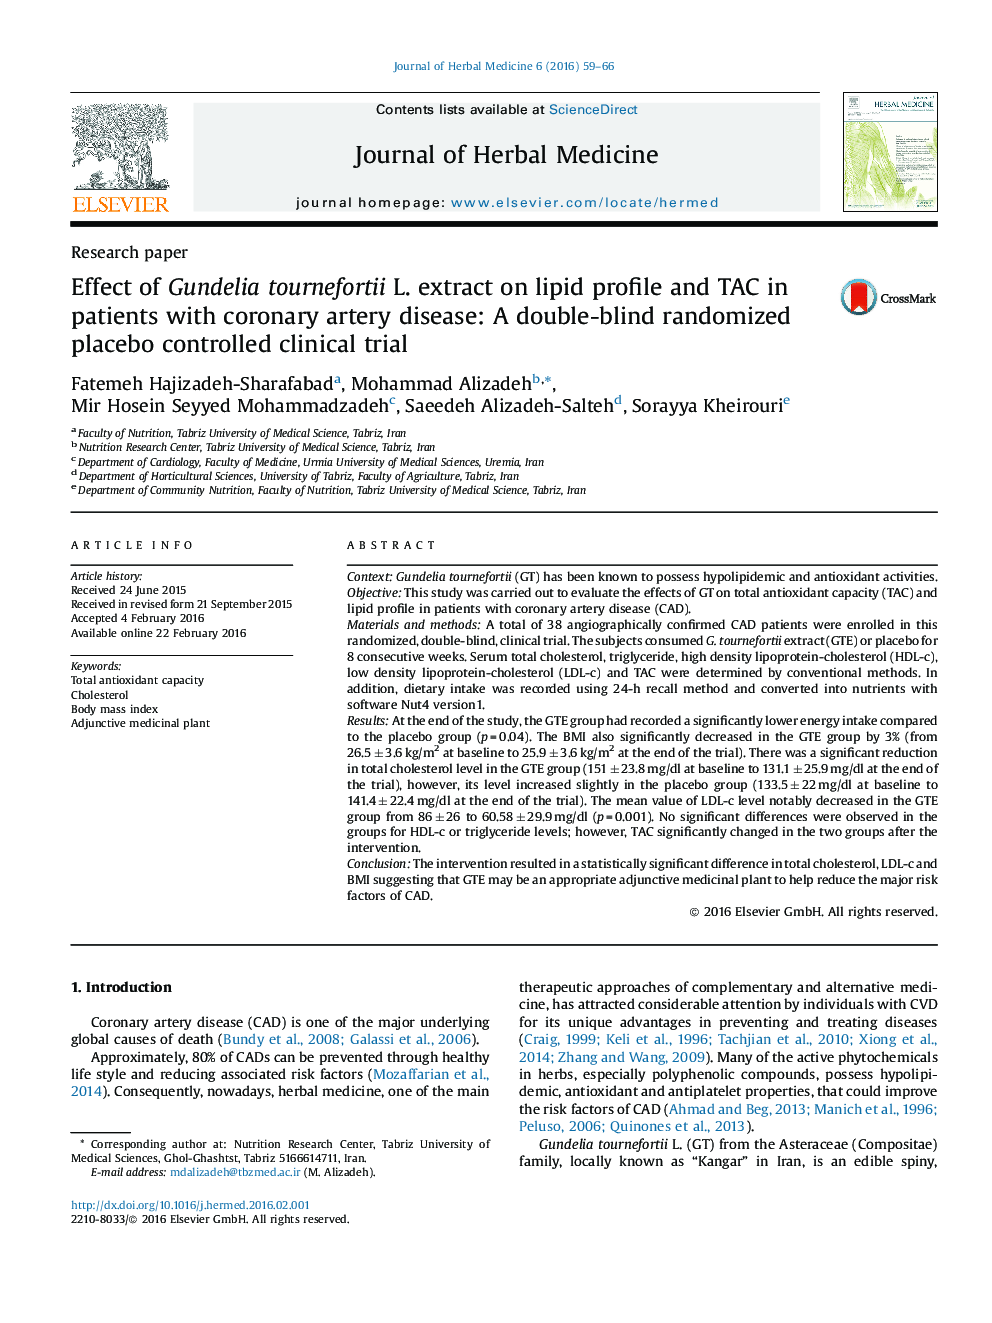 اثر عصاره Gundelia tournefortii L. بر پروفایل لیپید و TAC در بیماران مبتلا به بیماری عروق کرونر: یک کارآزمایی بالینی تصادفی دوسوکور با پلاسبو